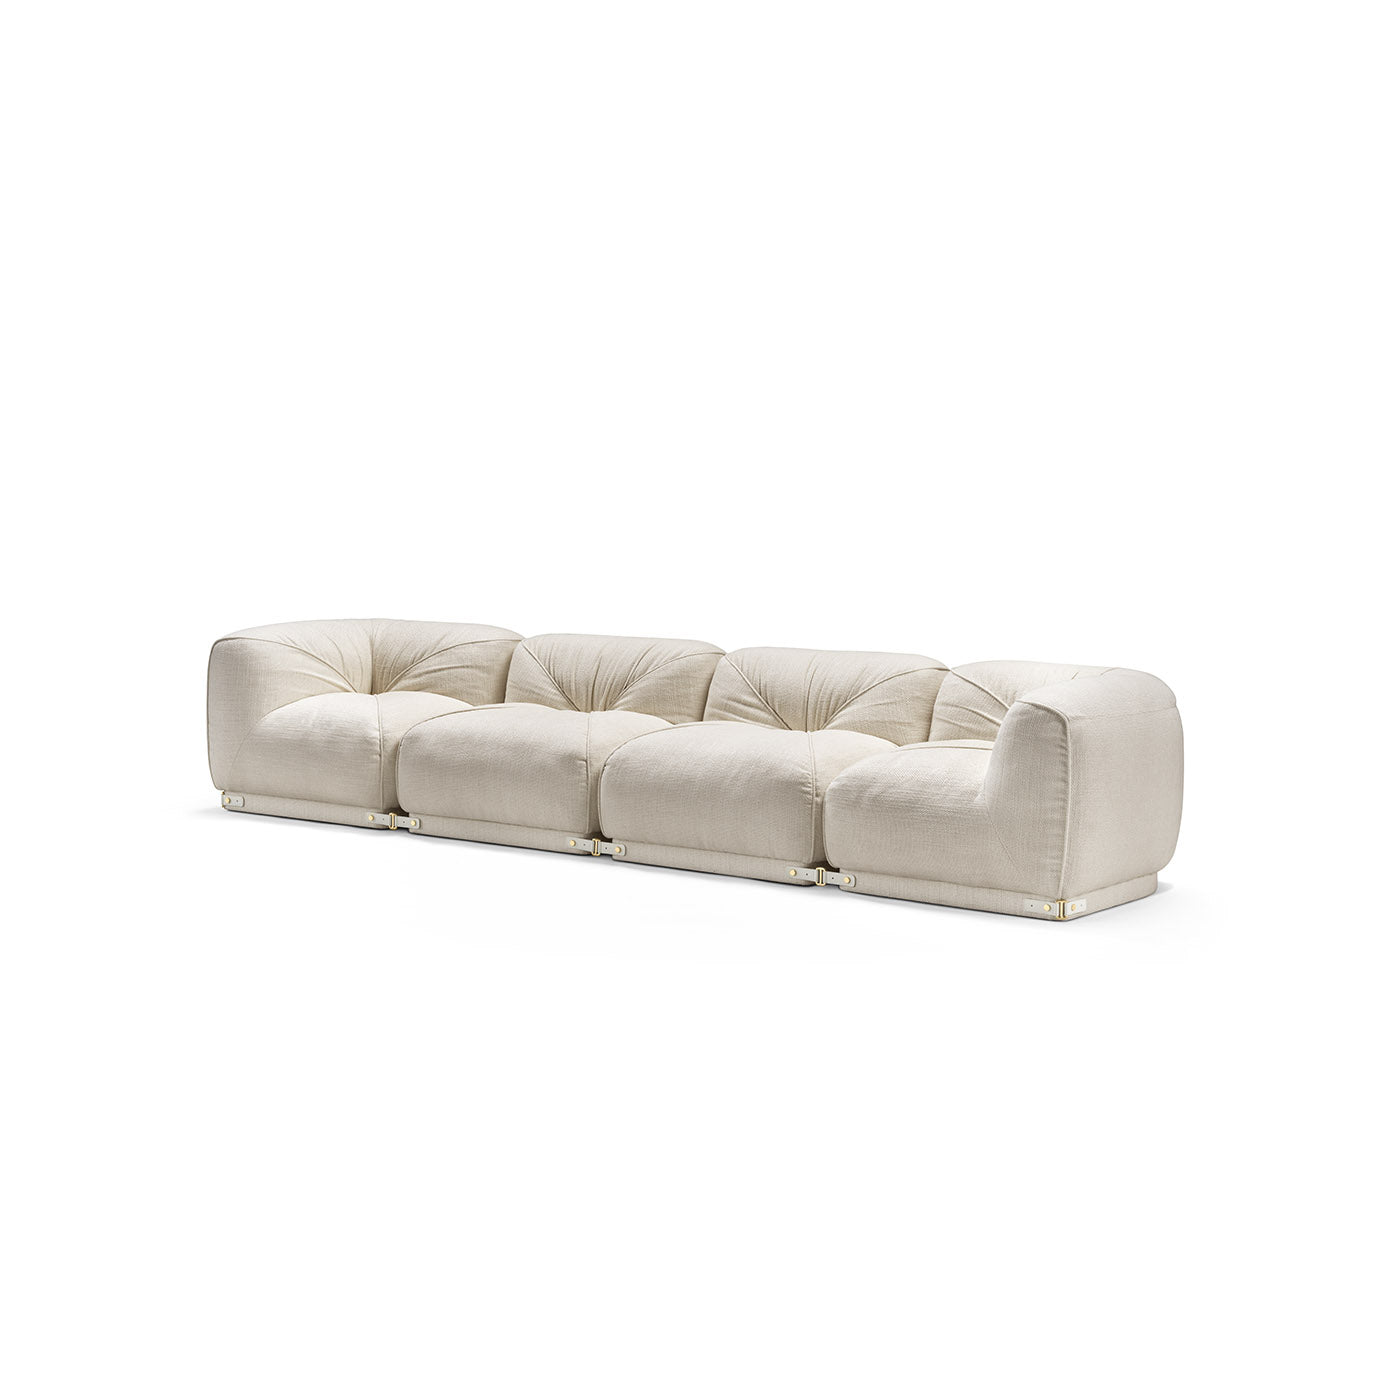 Leisure 4-Seater White Sofa by Lorenza Bozzoli - Alternative view 1